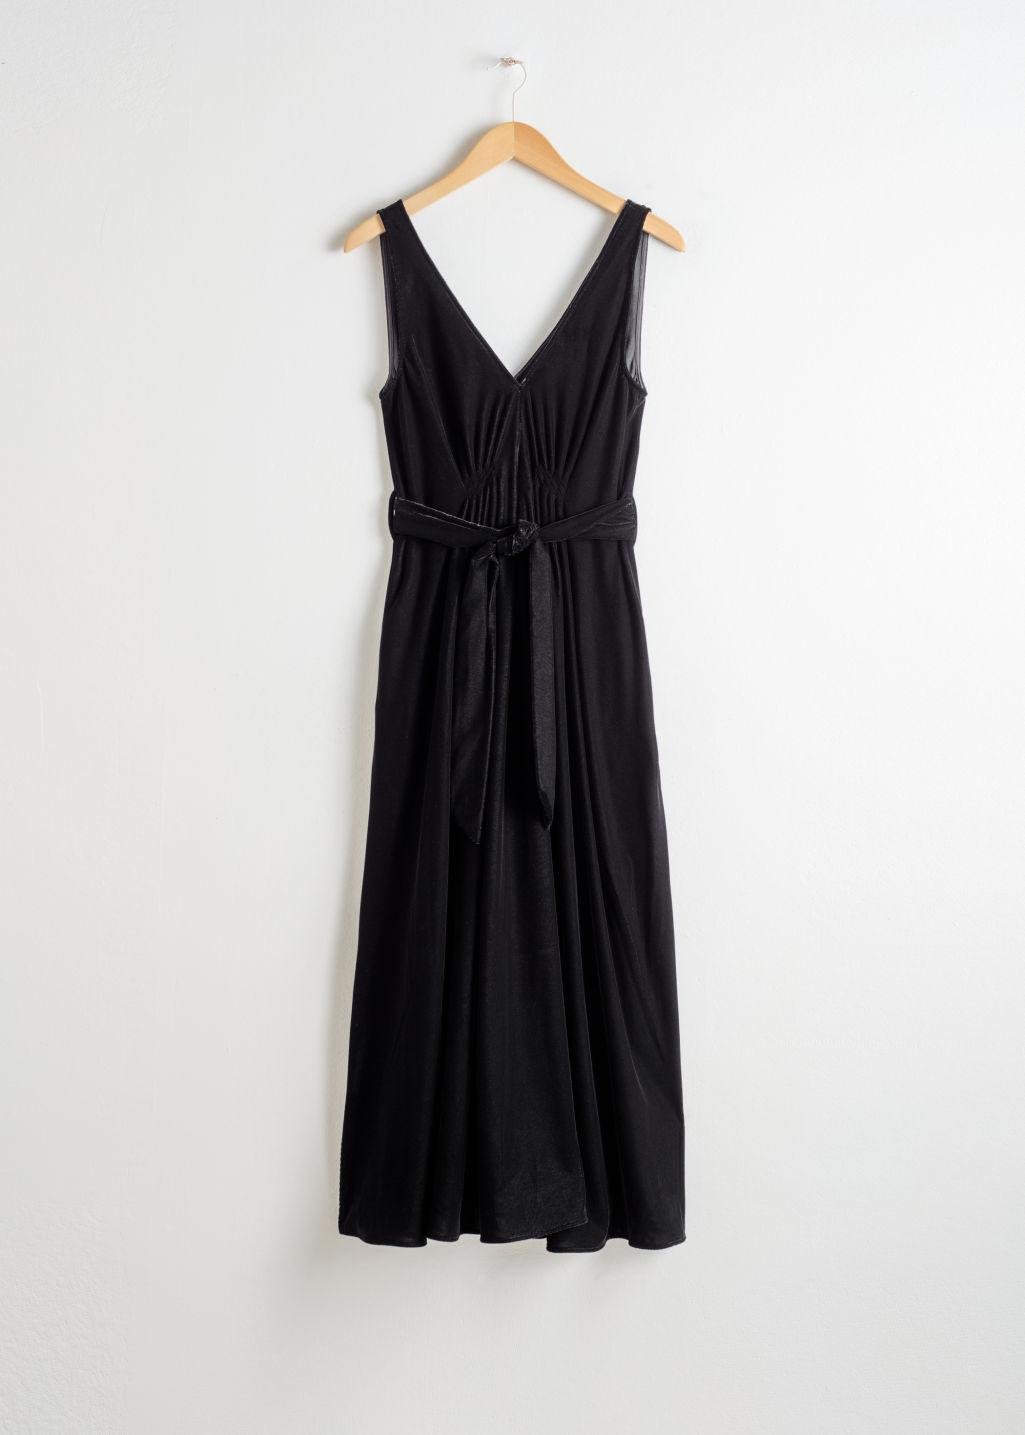 & Other Stories Belted Velvet Midi Dress in Black - Lyst